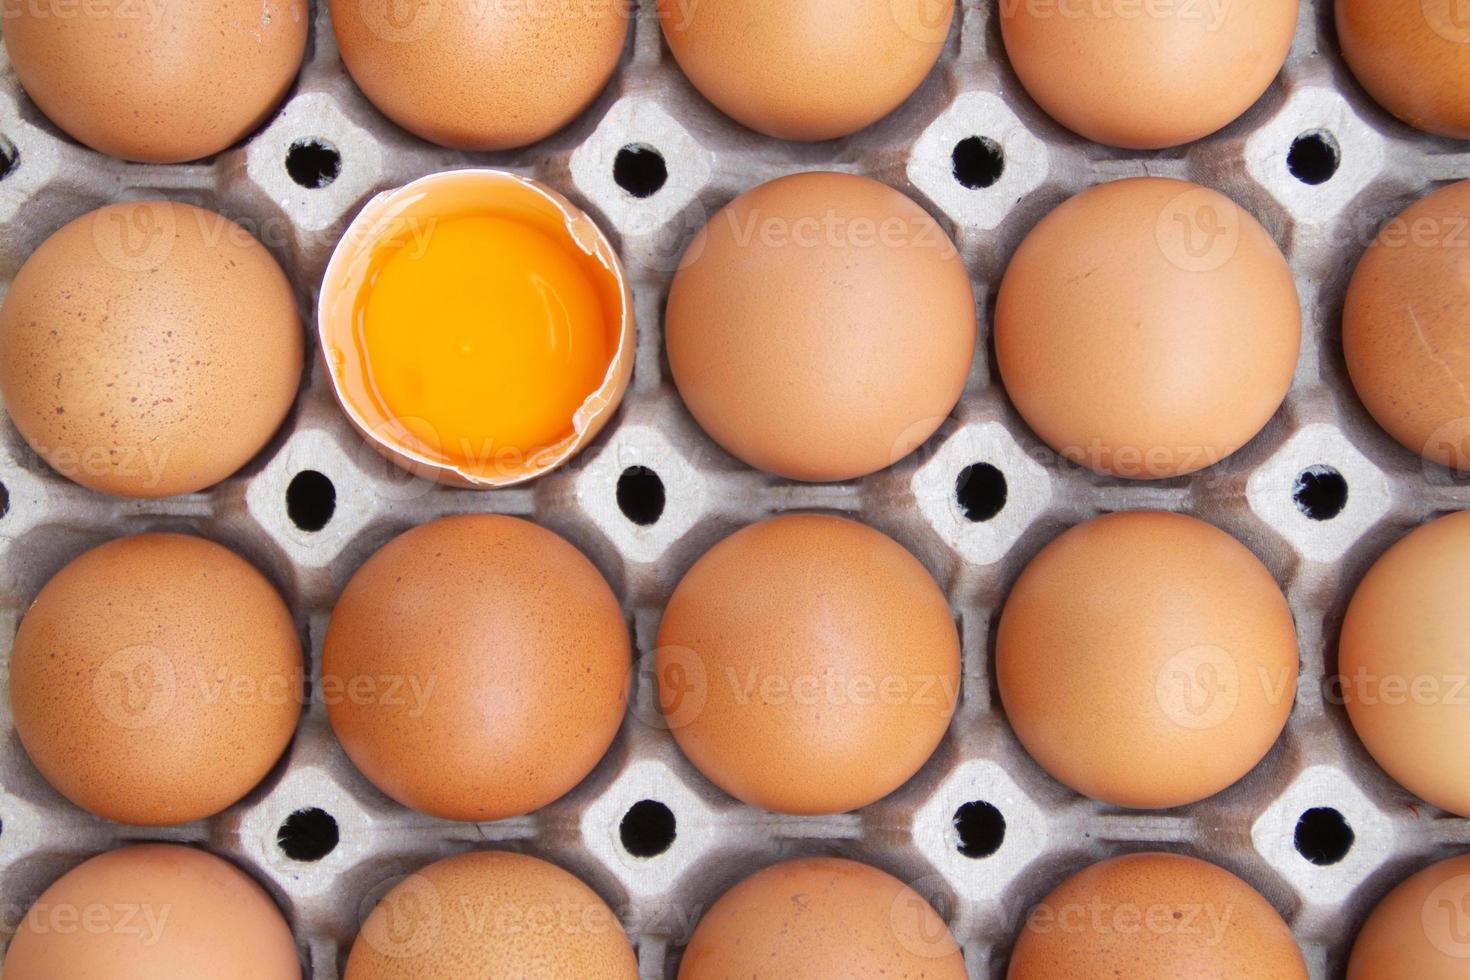 ovo de galinha marrom está meio quebrado entre outros ovos, ovos embalados em papelão ou caixas para transporte, ovo de galinha foto